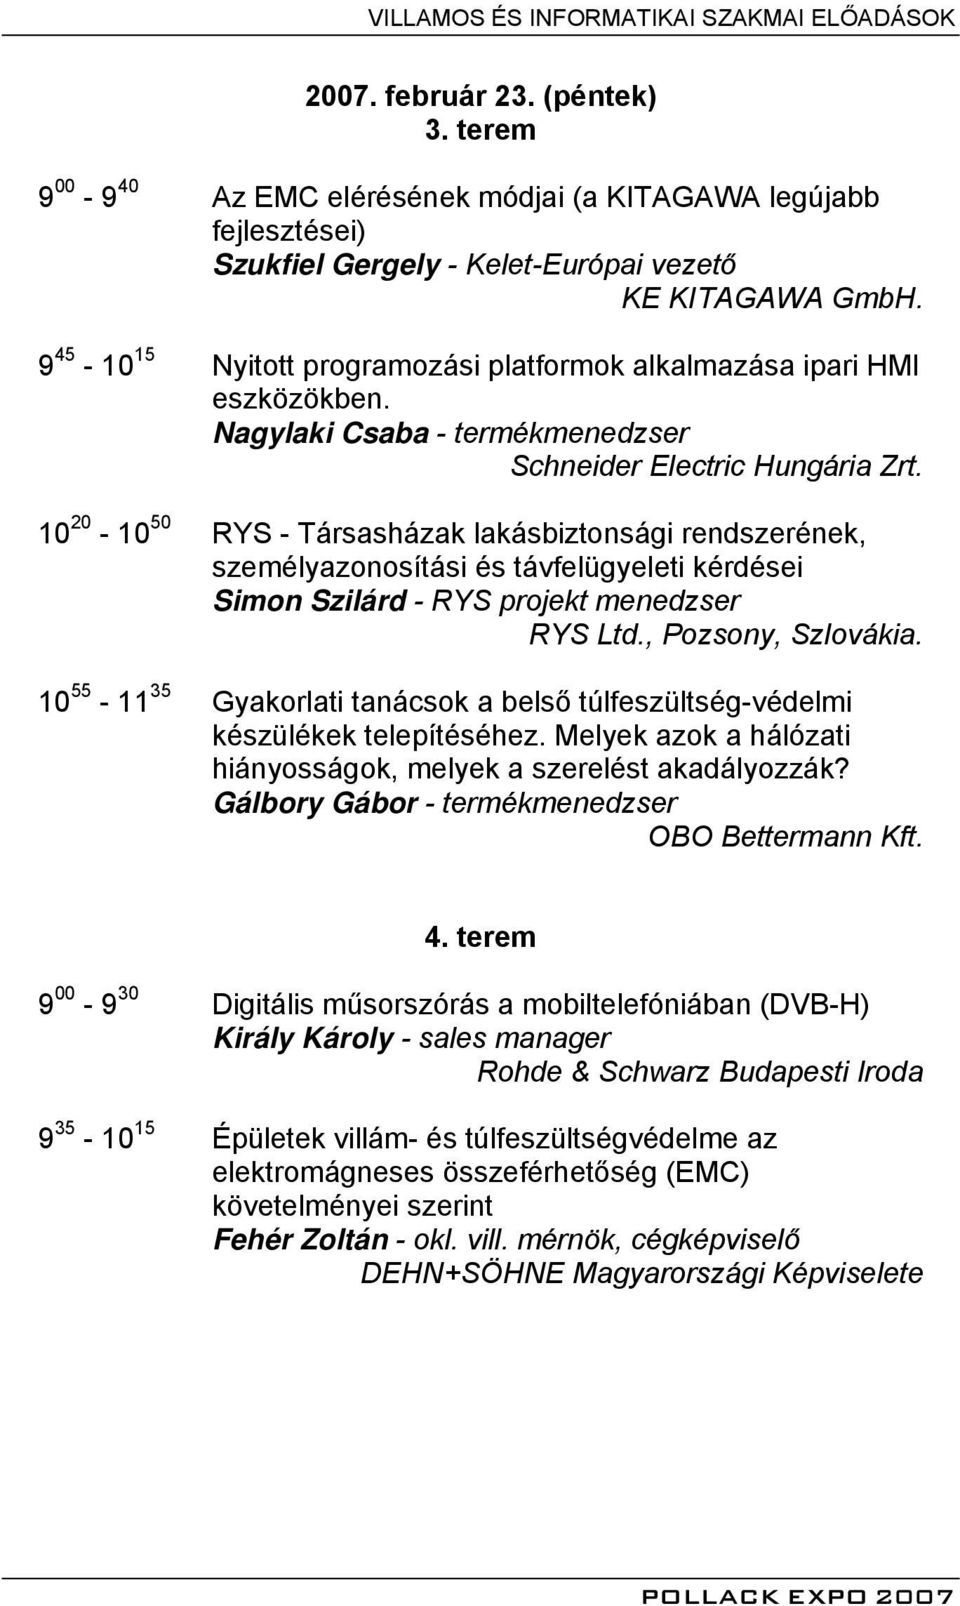 9 45-10 15 Nyitott programozási platformok alkalmazása ipari HMI eszközökben. Nagylaki Csaba - termékmenedzser Schneider Electric Hungária Zrt.